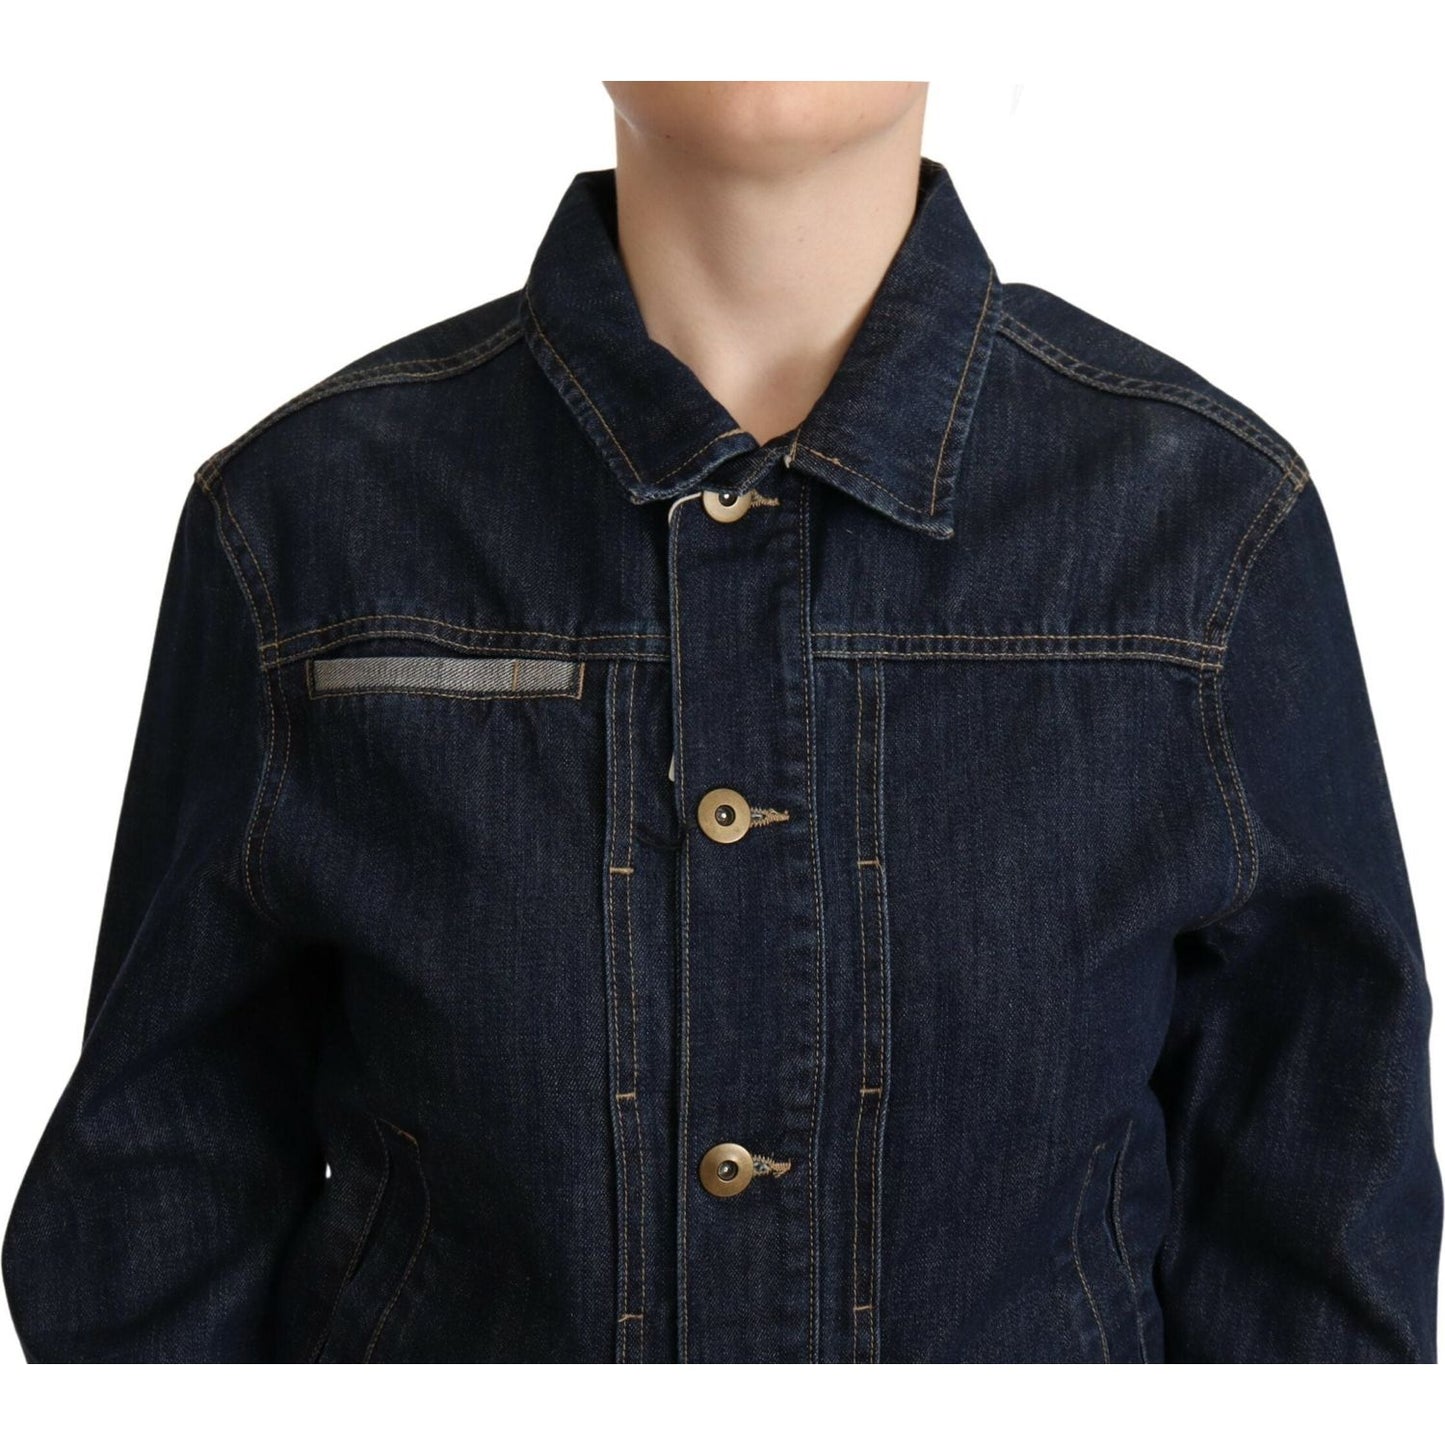 Master Coat Chic Dark Blue Denim Jacket dark-blue-button-down-long-sleeves-denim-jacket-1